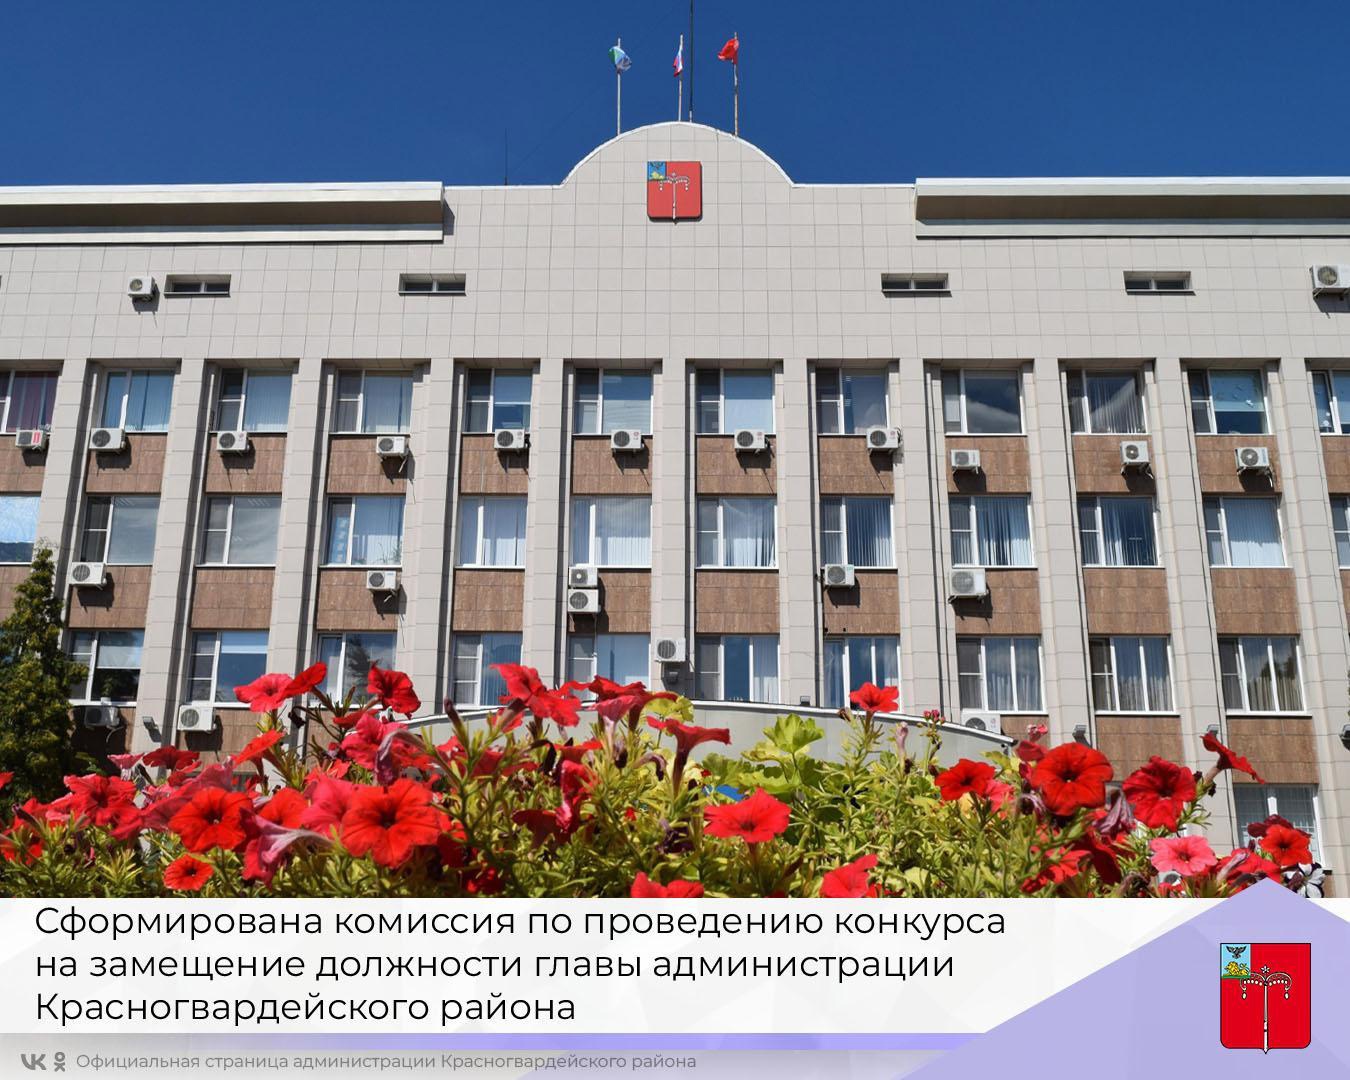 Сформирована комиссия по проведению конкурса на замещение должности главы администрации Красногвардейского района.